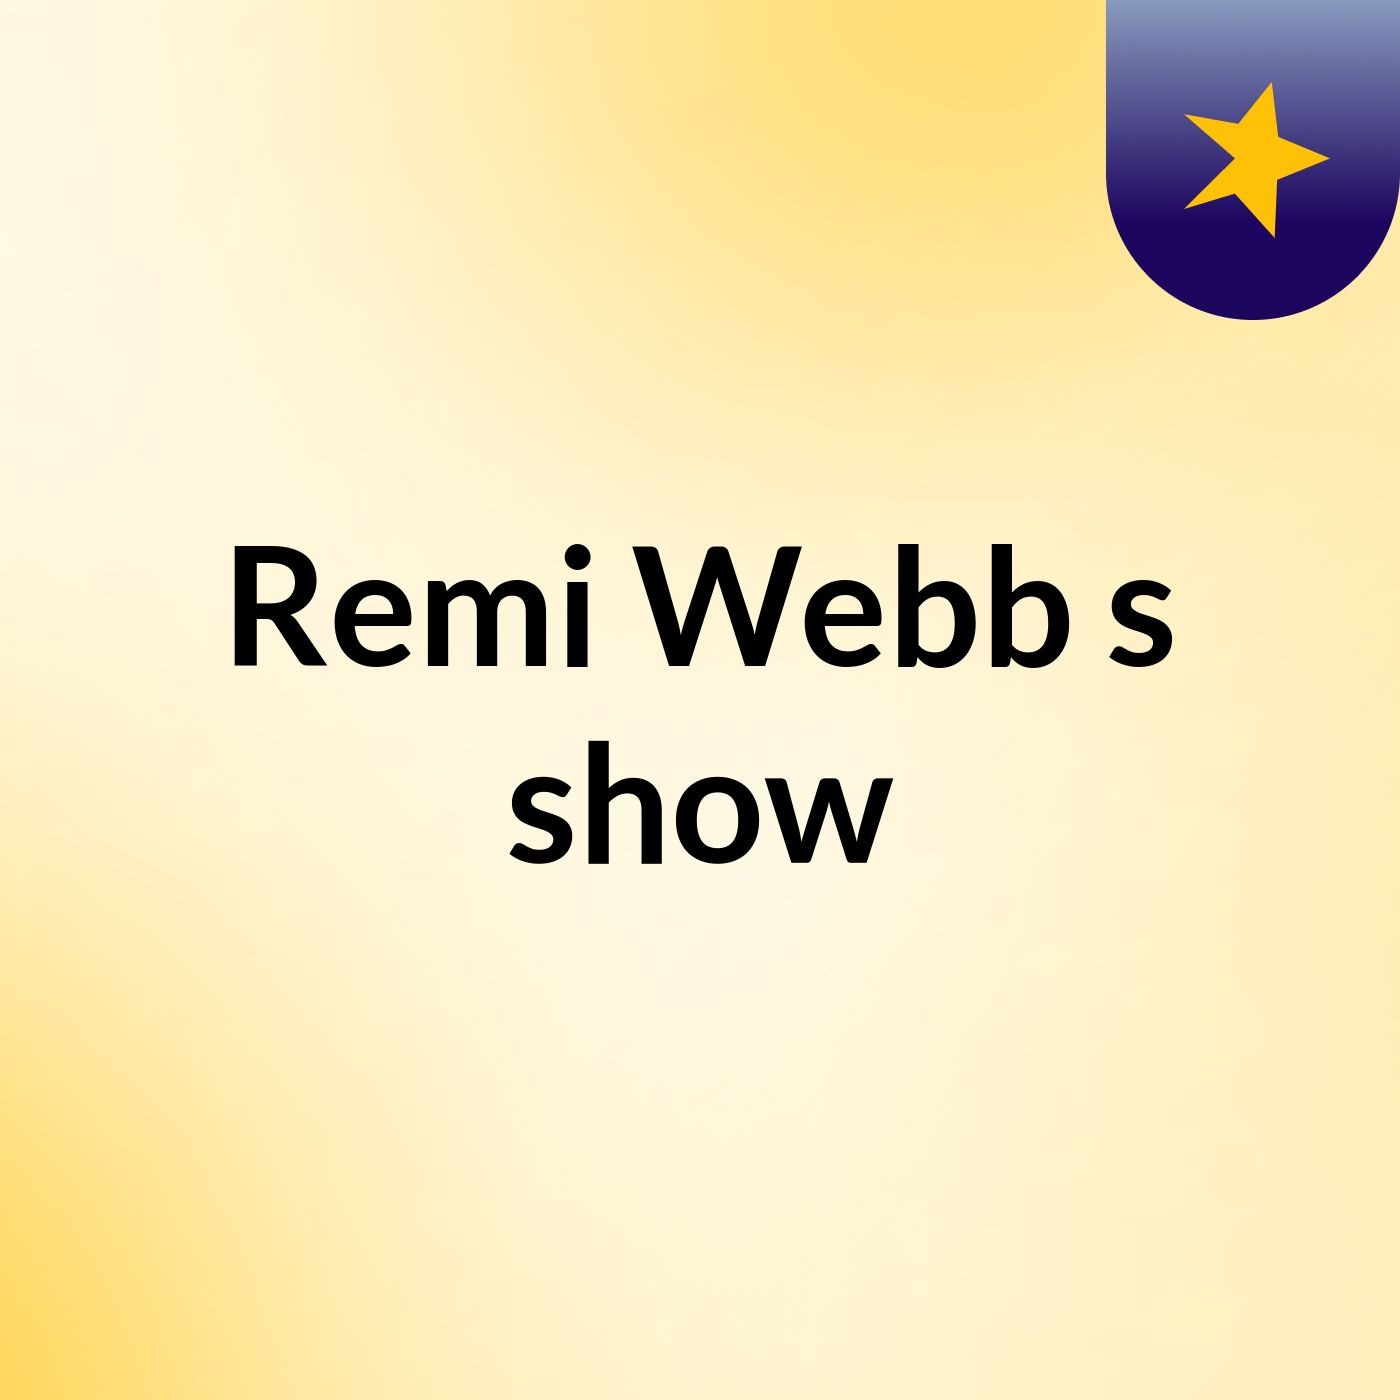 Remi Webb's show